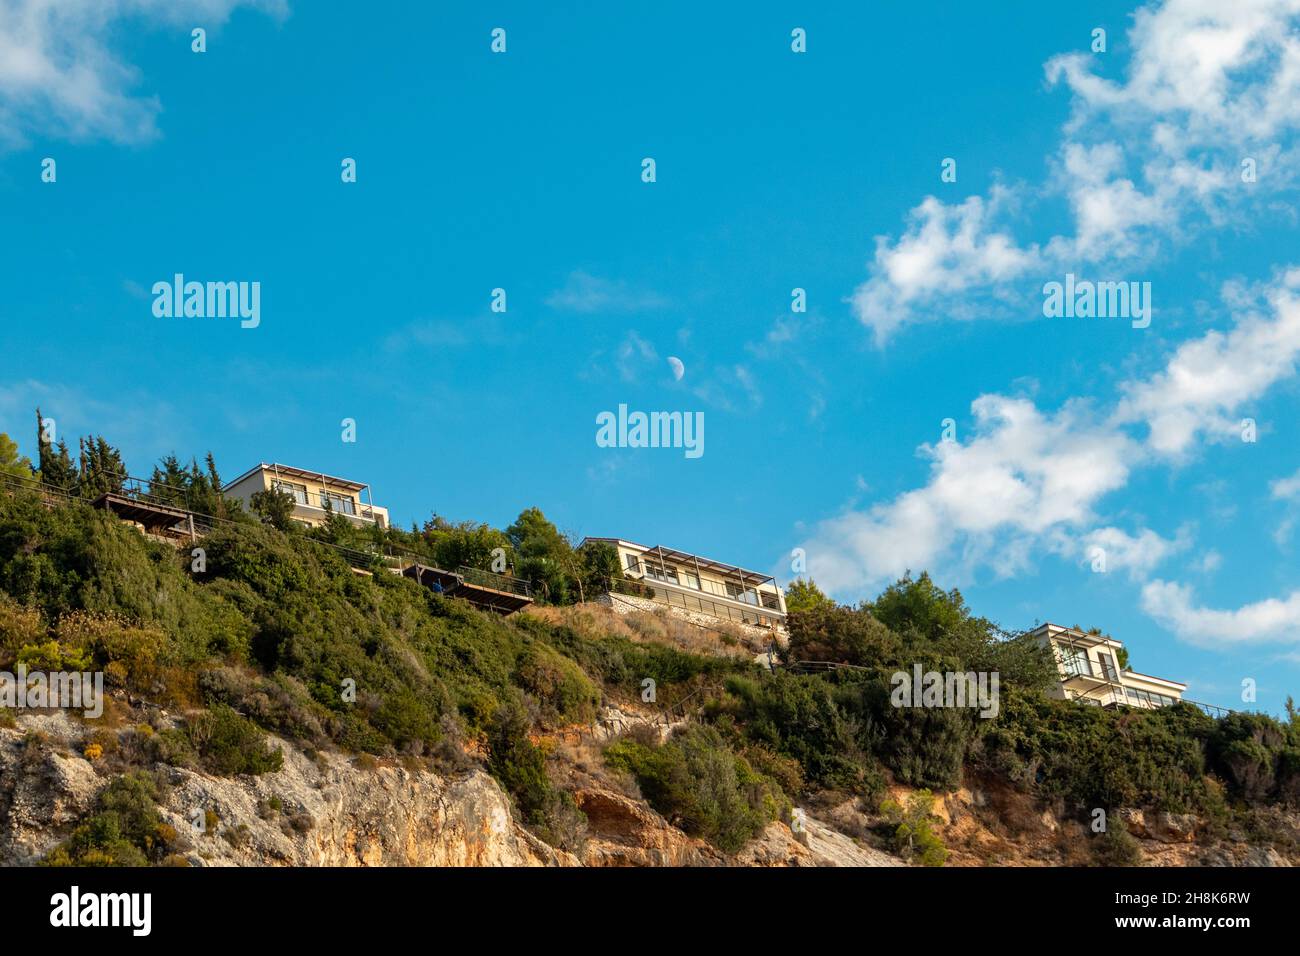 Malerische, lebhafte Landschaft mit griechischen Ferienvilla-Häusern auf grünen hohen Hügeln am blauen, malerischen Himmel mit Wolken und jungem Mond auf der Insel Lefkada, Greec Stockfoto